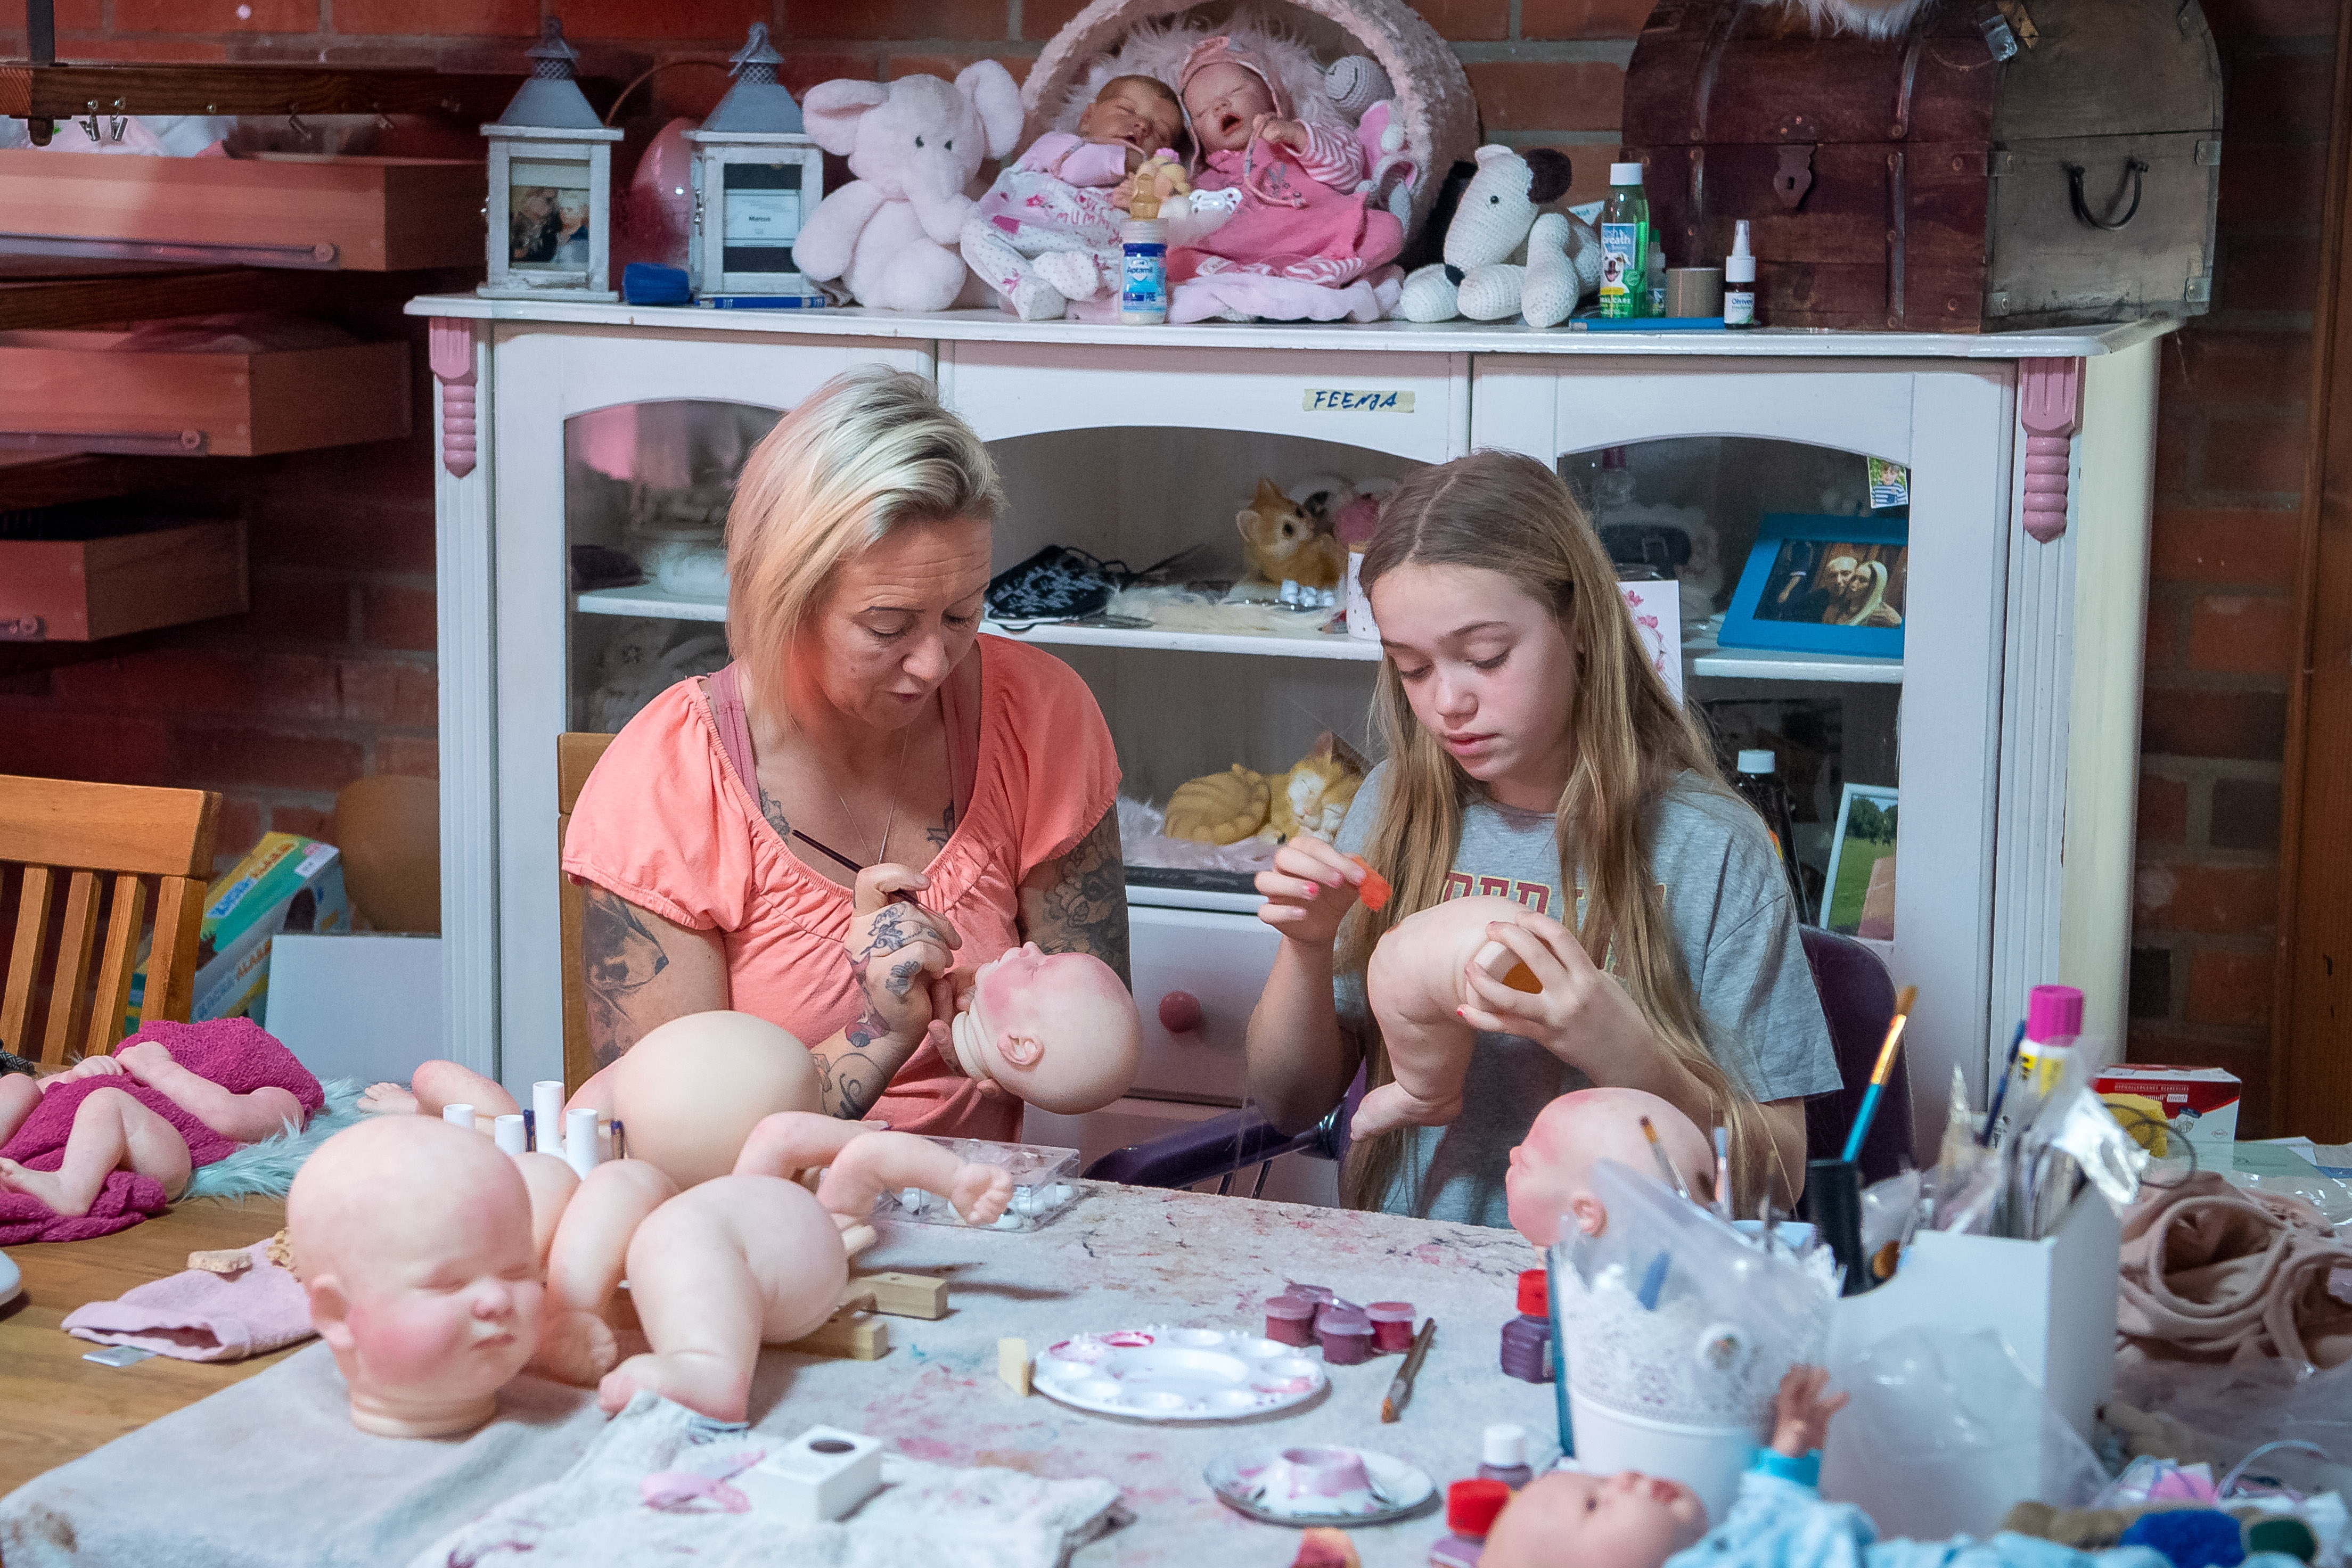 Jasmin Karl y su hija pintan las muñecas "reborn" que se asemejarán a bebés reales de modo perturbador para algunos, fascinante para otros. Foto: Sina Schuldt/dpa